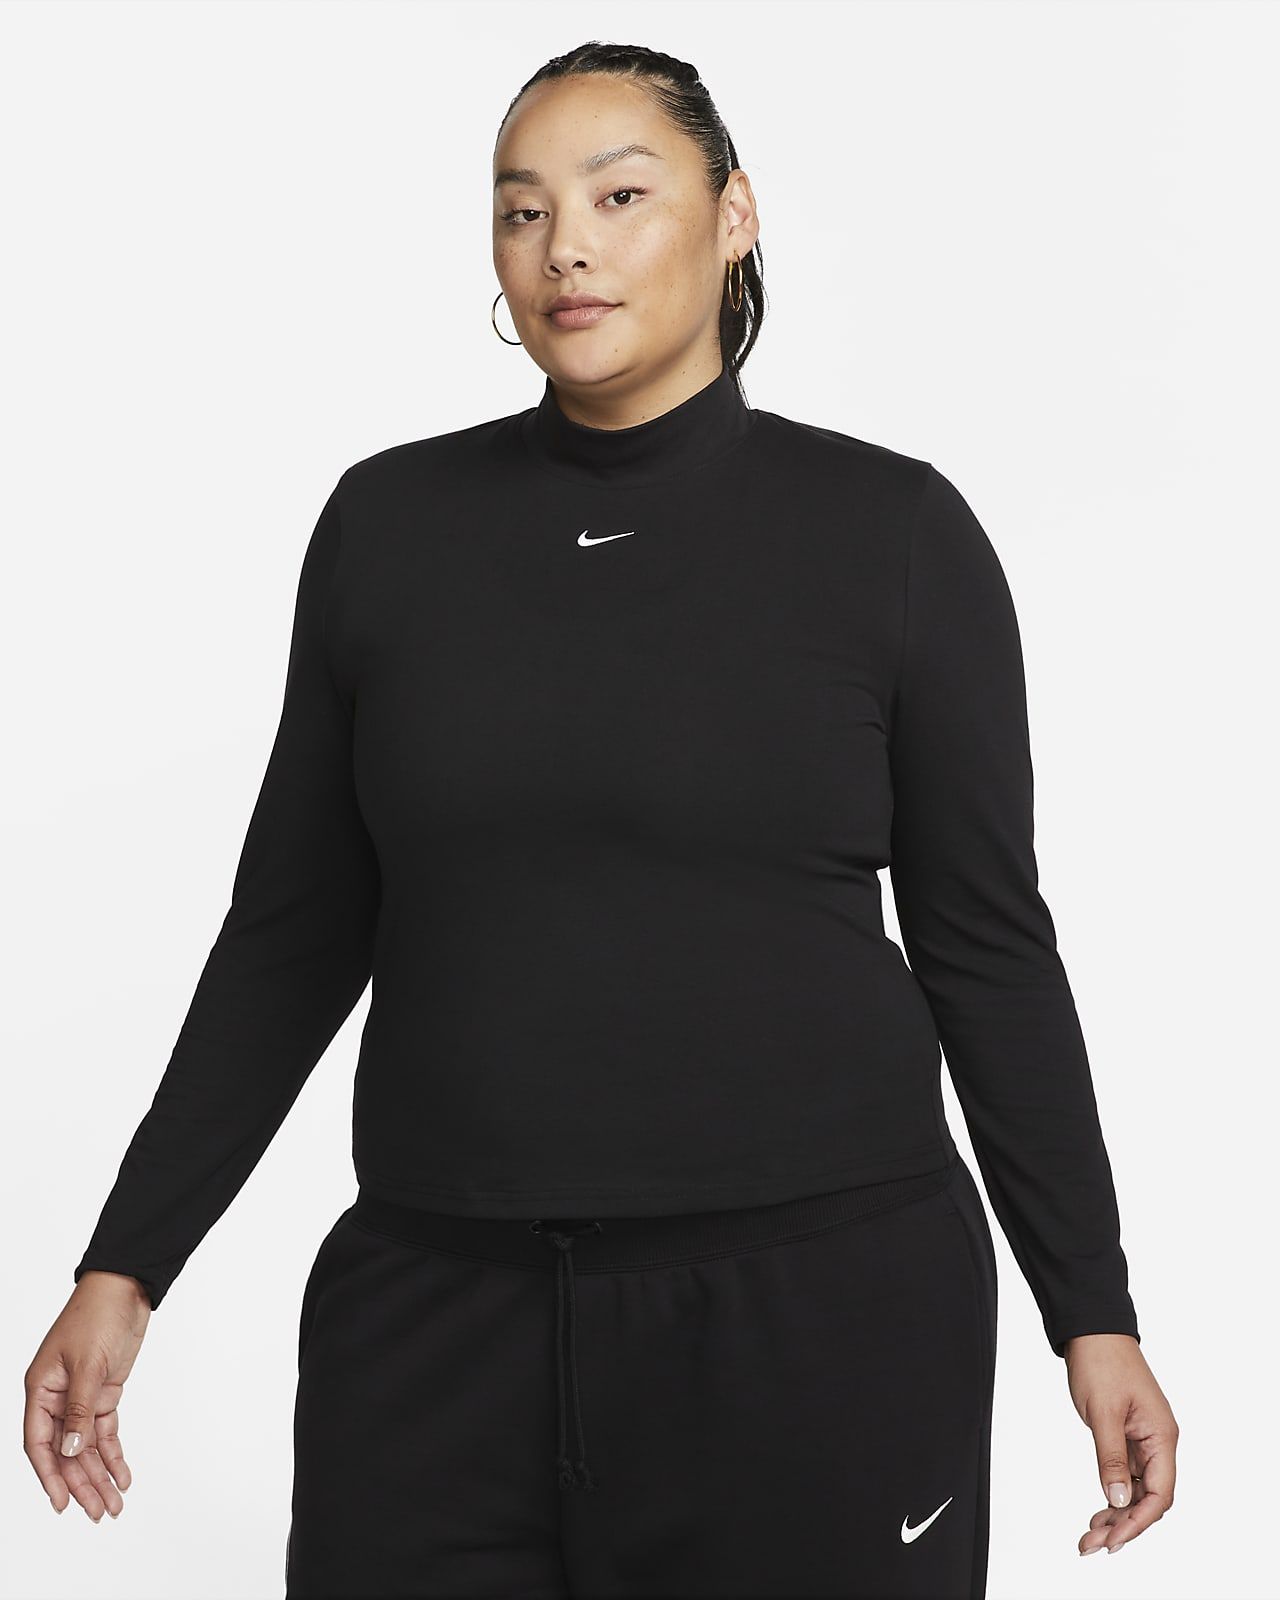 Women's Long-Sleeve Mock-Neck Top (Plus Size) | Nike (US)